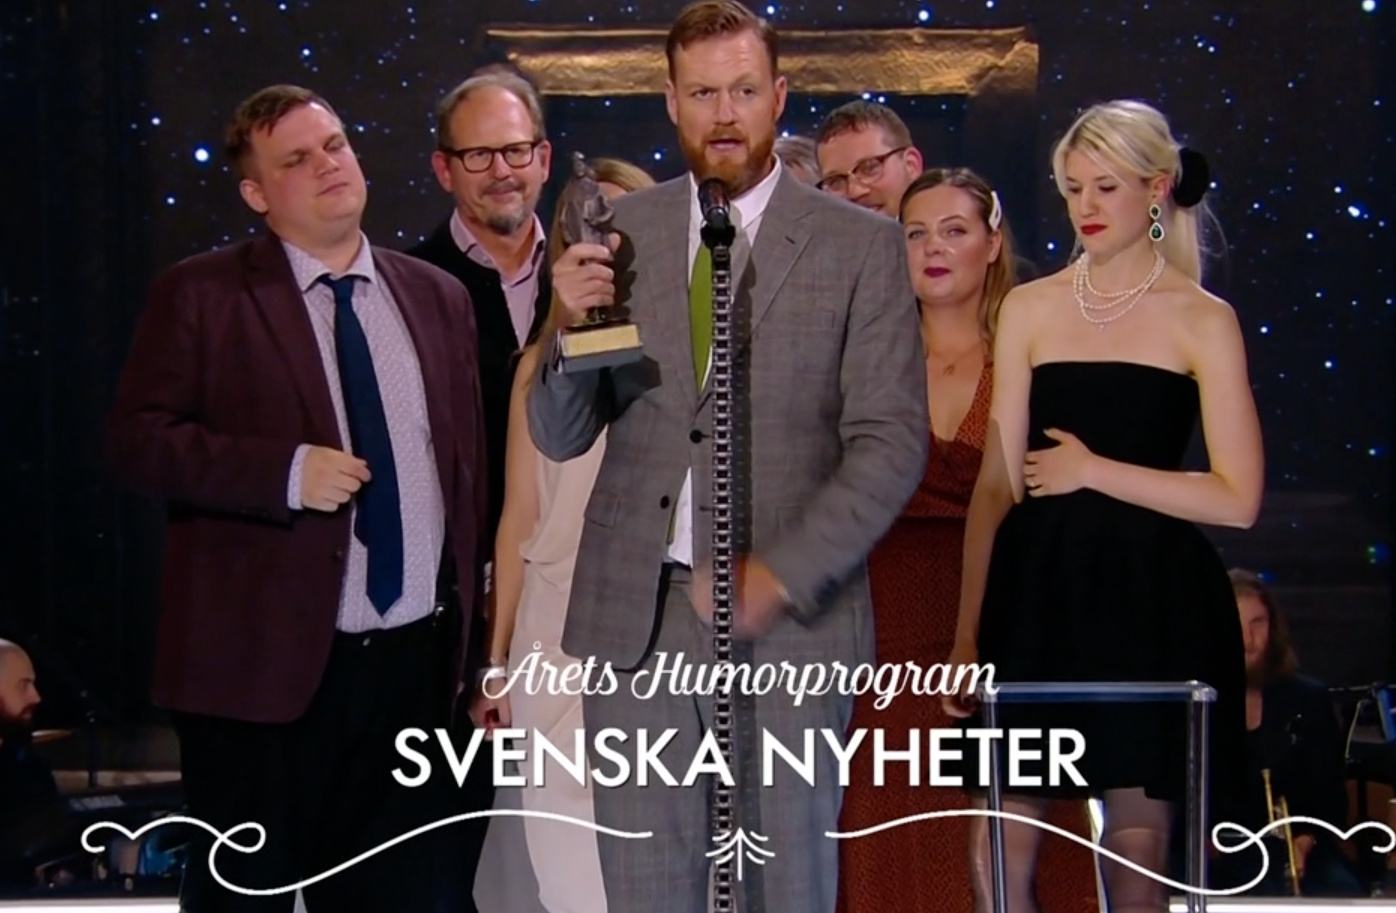 Svenska nyheter vann pris för årets humorprogram.